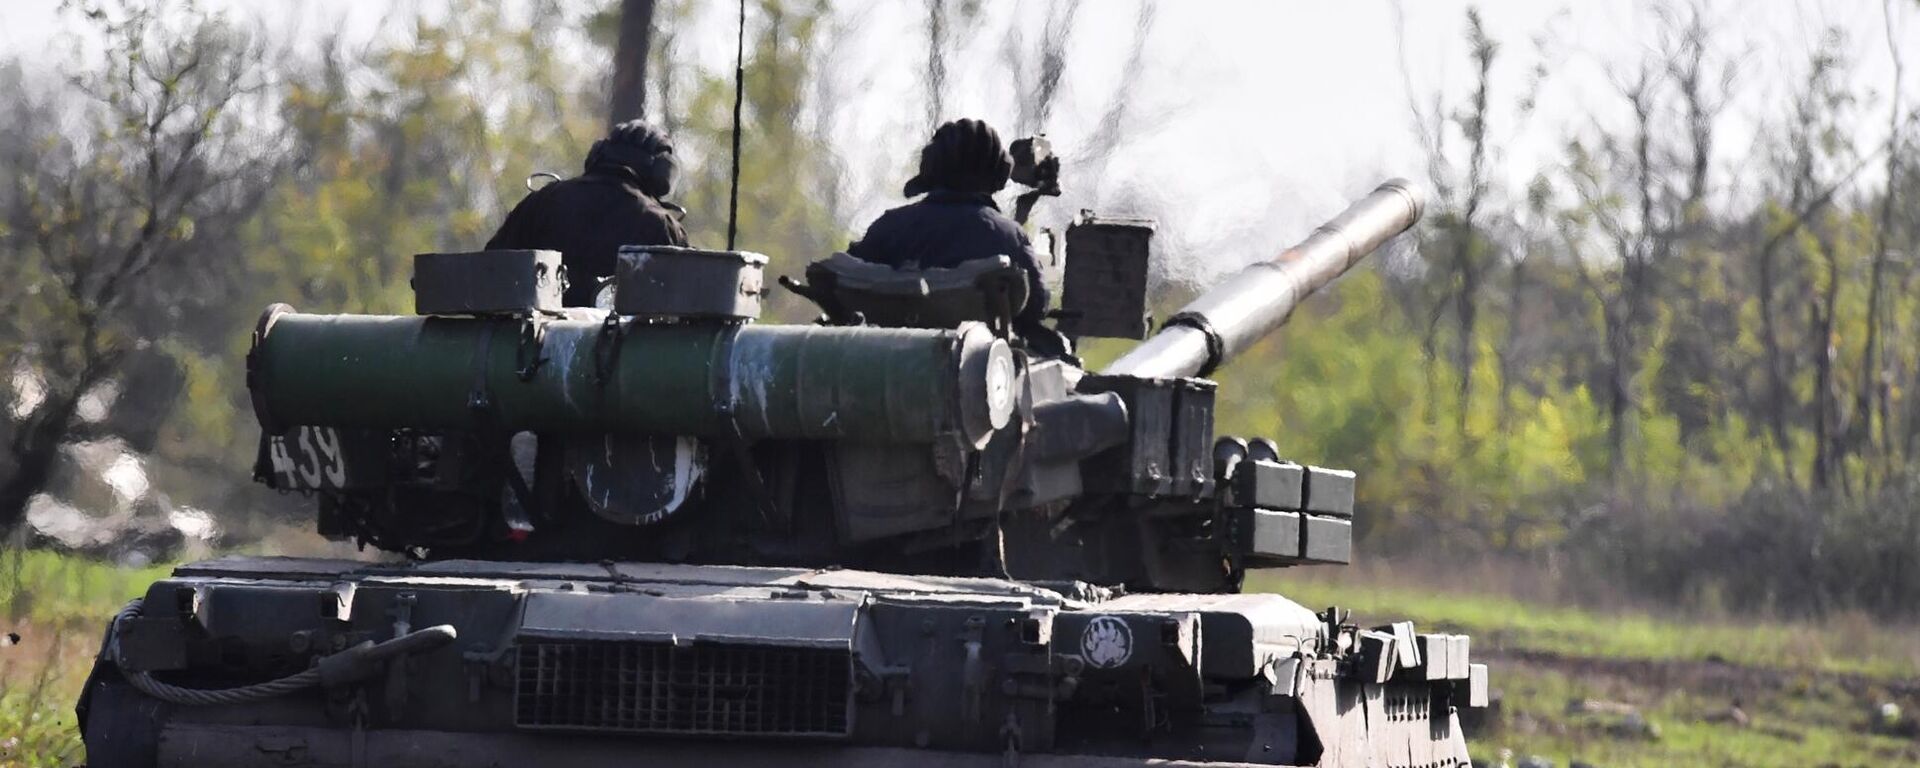 يتم إرسال دبابة تي-80 لإطلاق النار الحي في مواقع القوات المسلحة لأوكرانيا في منطقة دونيتسك - سبوتنيك عربي, 1920, 29.11.2022